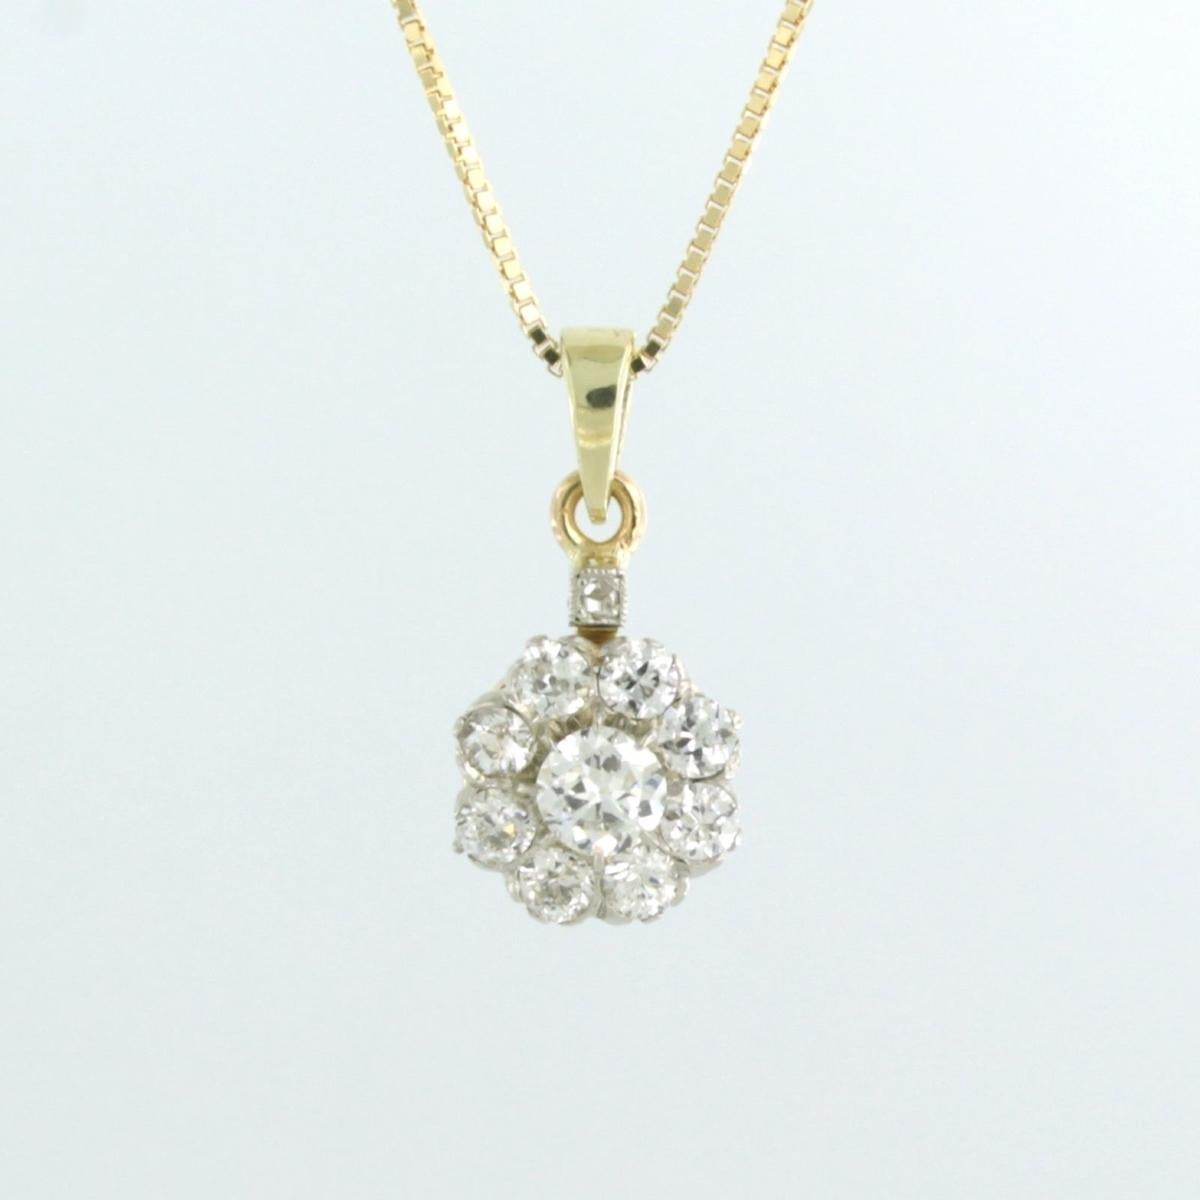 Art Nouveau Necklace with pendant set with Diamonds 18k gold For Sale